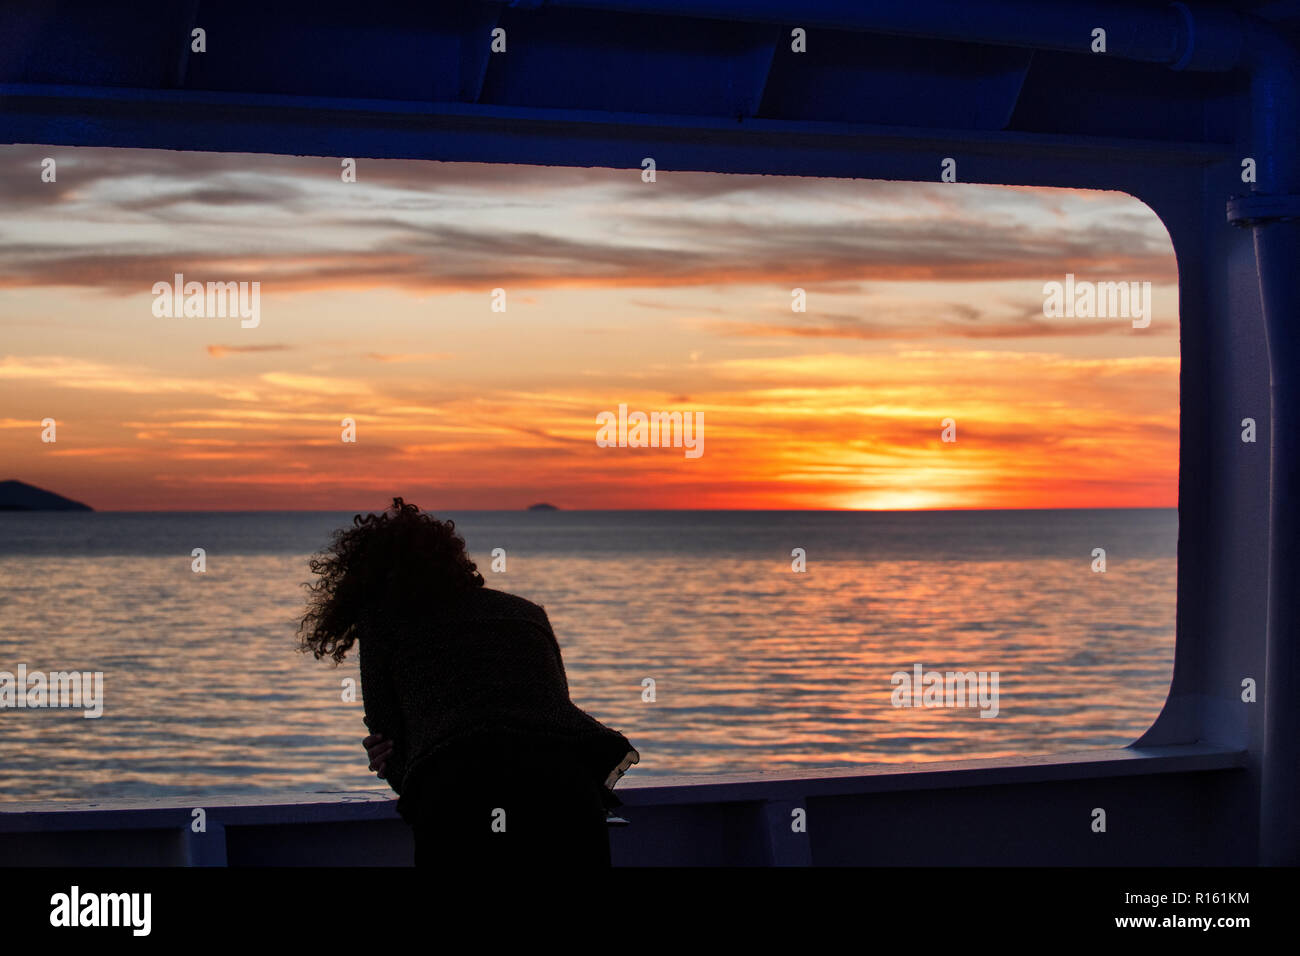 Une femme aime coucher de soleil sur l'île de Hvar, Croatie dans la mer Adriatique depuis le pont d'un ferry Jadrolinija, en route vers le produit déversé sur le continent. Banque D'Images